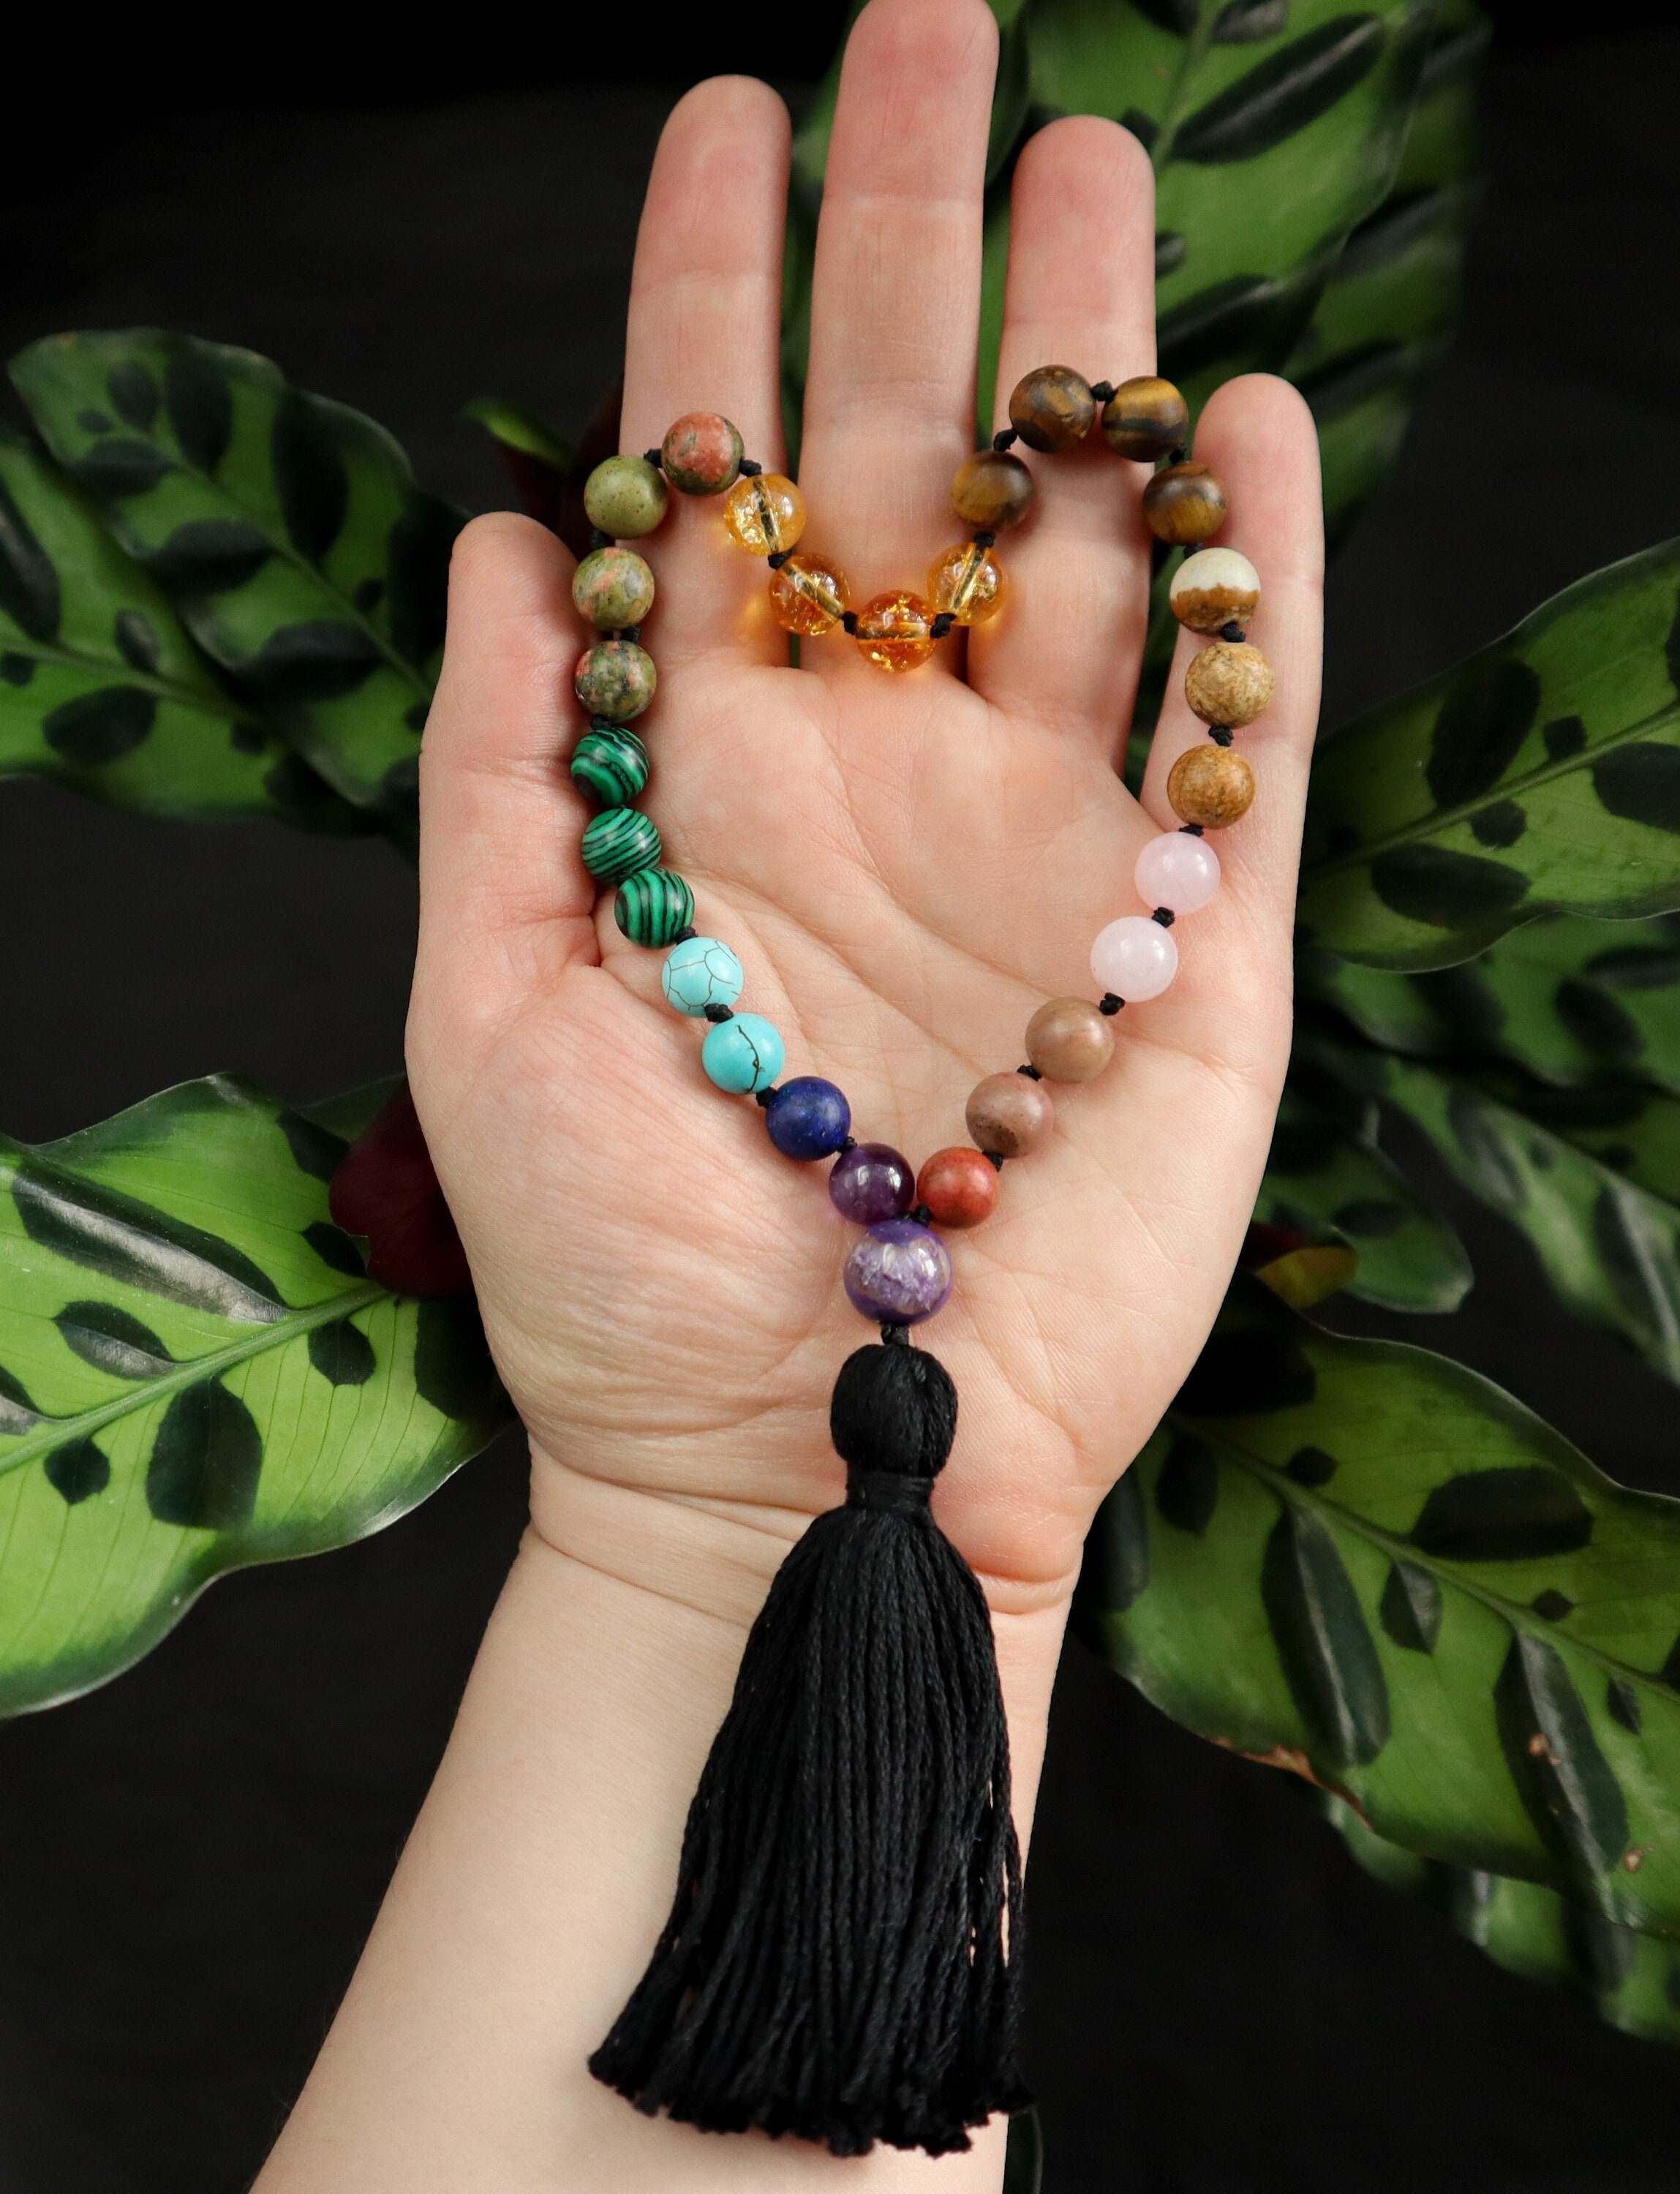 Pocket Mala, Mini Mala, Kids Mala Beads, Worry Beads, Pocket Fidget Beads,  27 Bead Mala, Affirmation Beads, Meditation Beads, Touchstone 